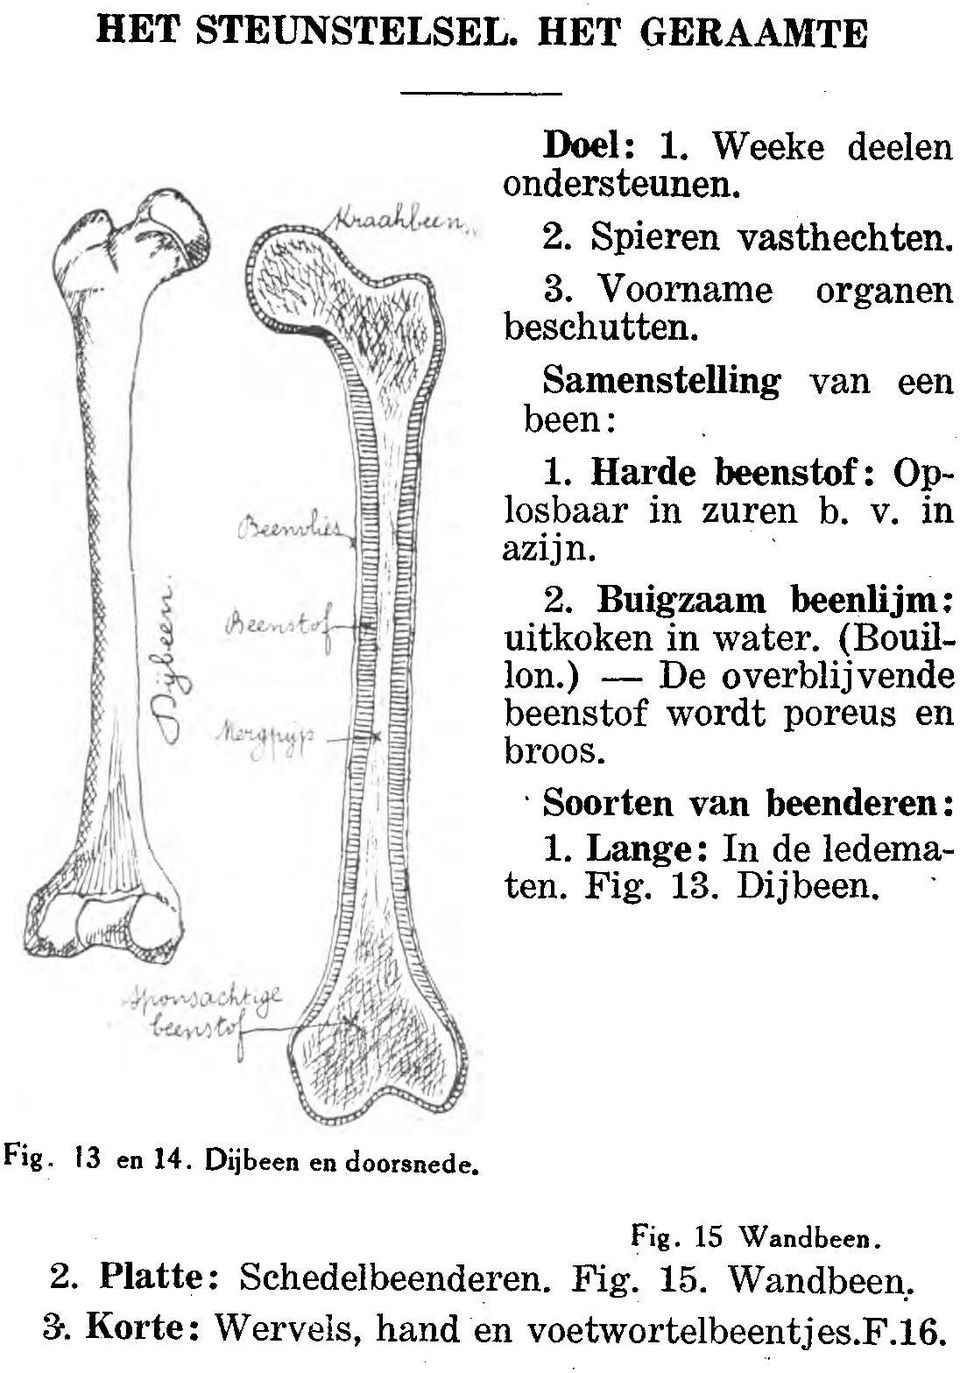 ) -De overblijvende beenstof wordt poreus en broos. Soorten van beenderen: 1. Lange: In de ledematen. Fig. 13. Dijbeen. Fig. 13 en 14.